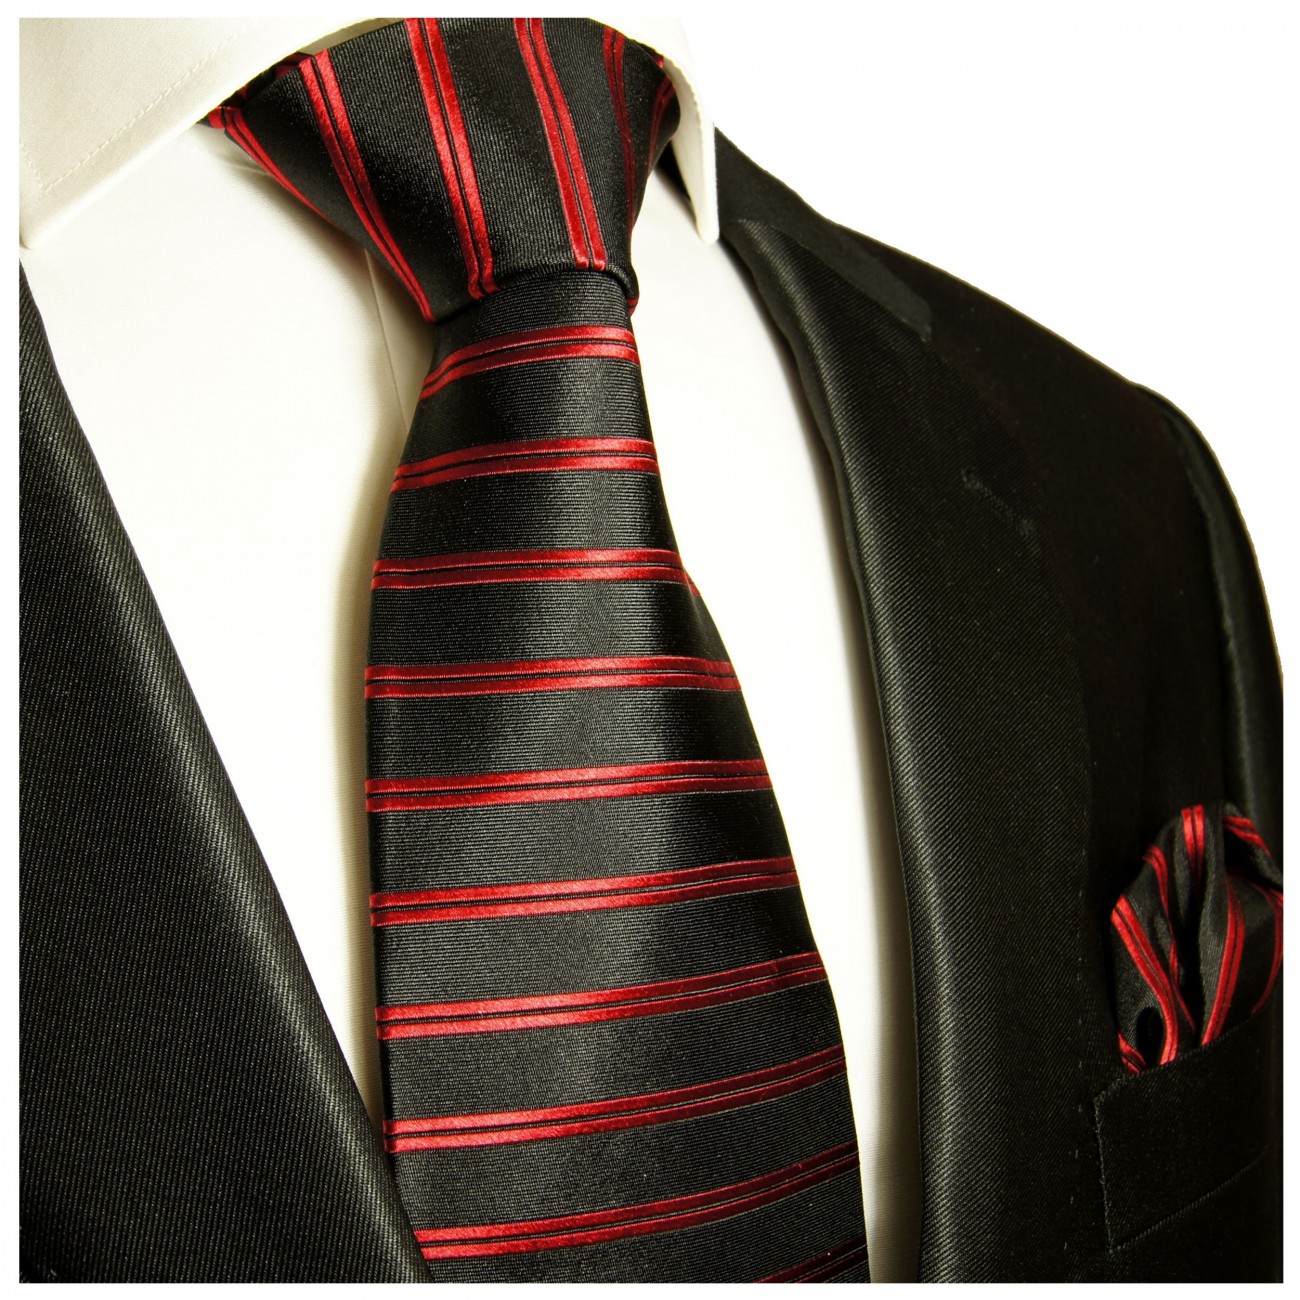 Krawatte rot schwarz gestreift Seide mit Einstecktuch